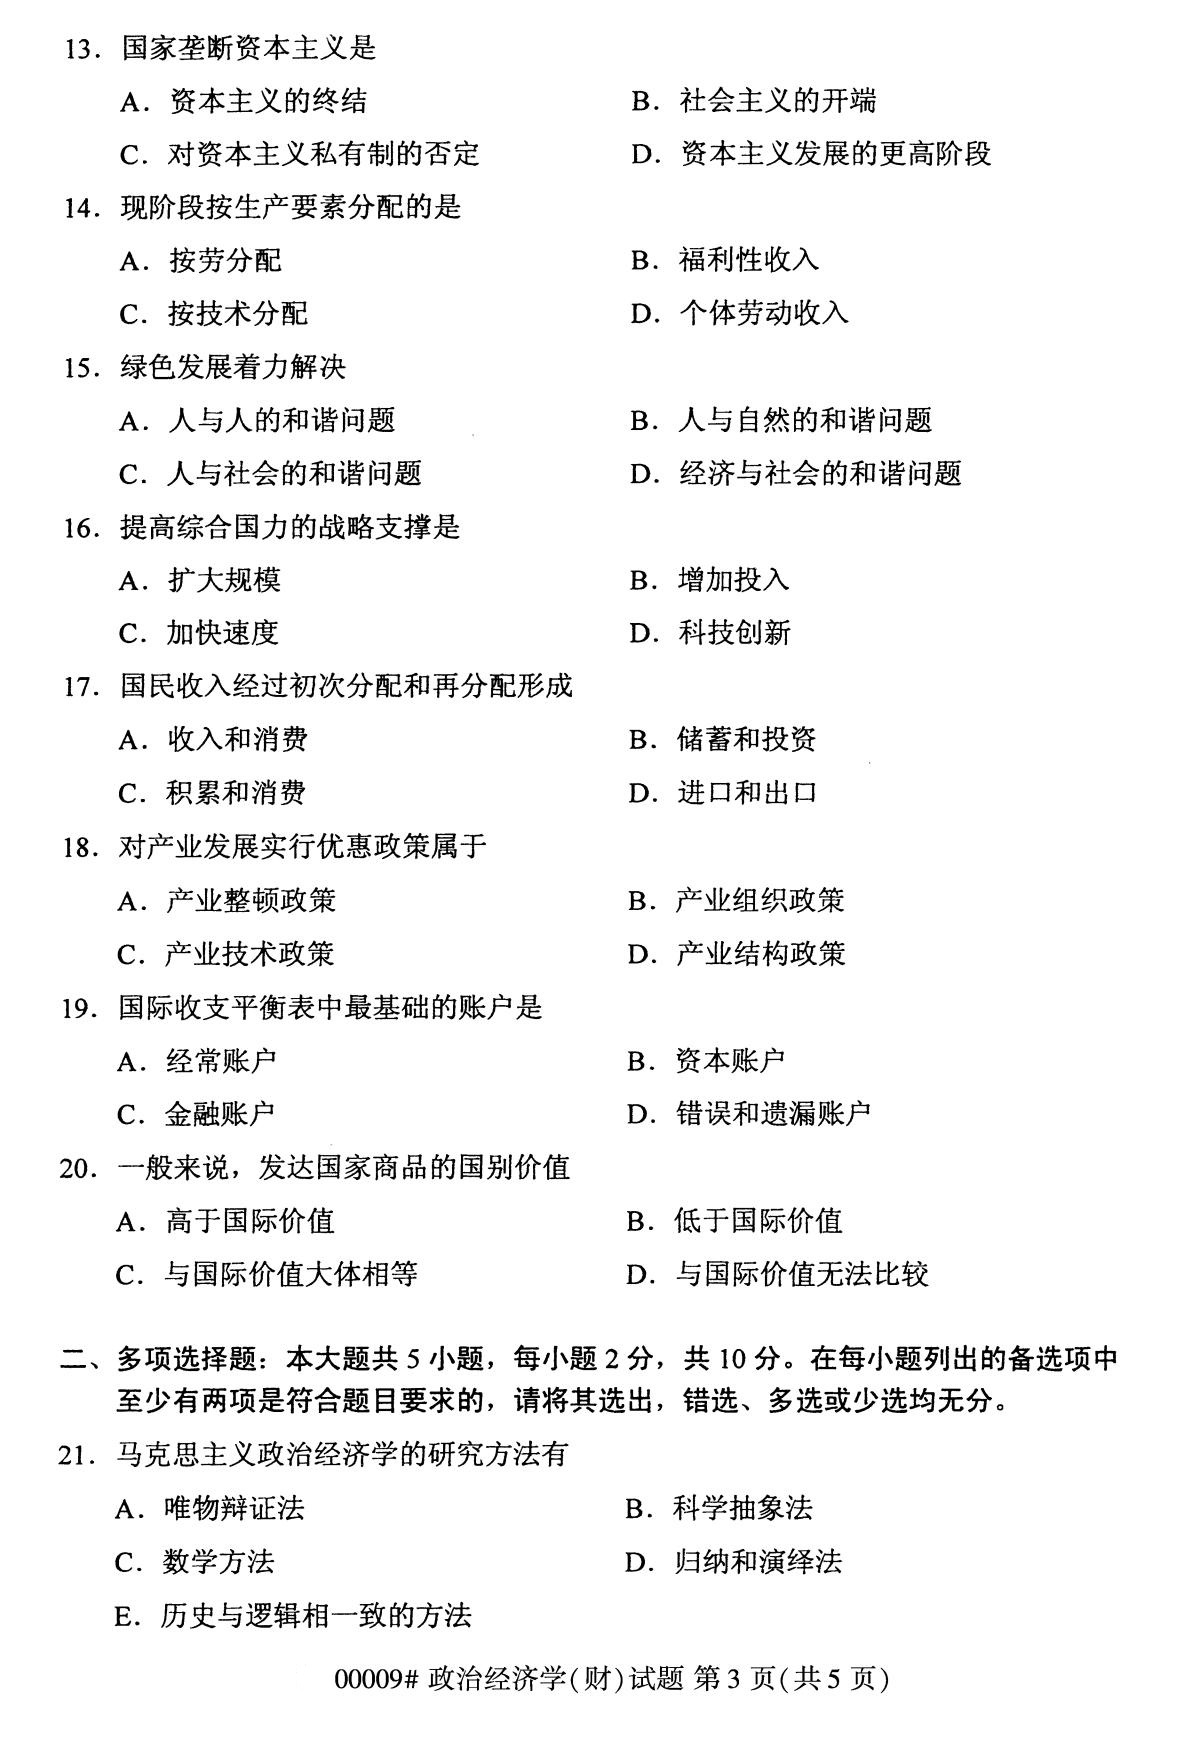 广东省2020年8月自学考试本科政治经济学(财经类)真题(图3)